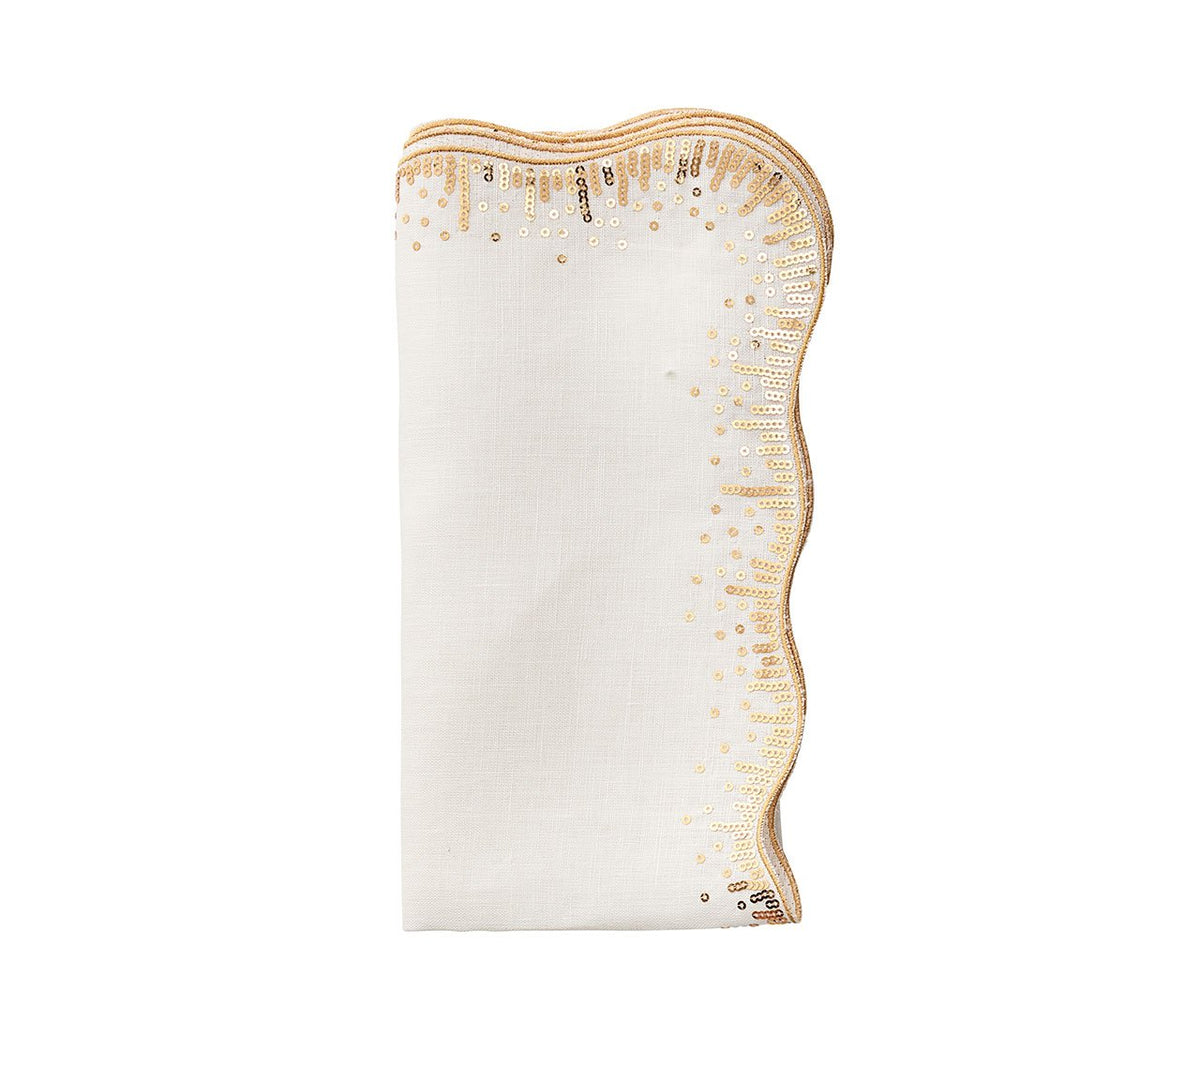 Kim Seybert Luxury Sequin Spray Napkin in White & Gold